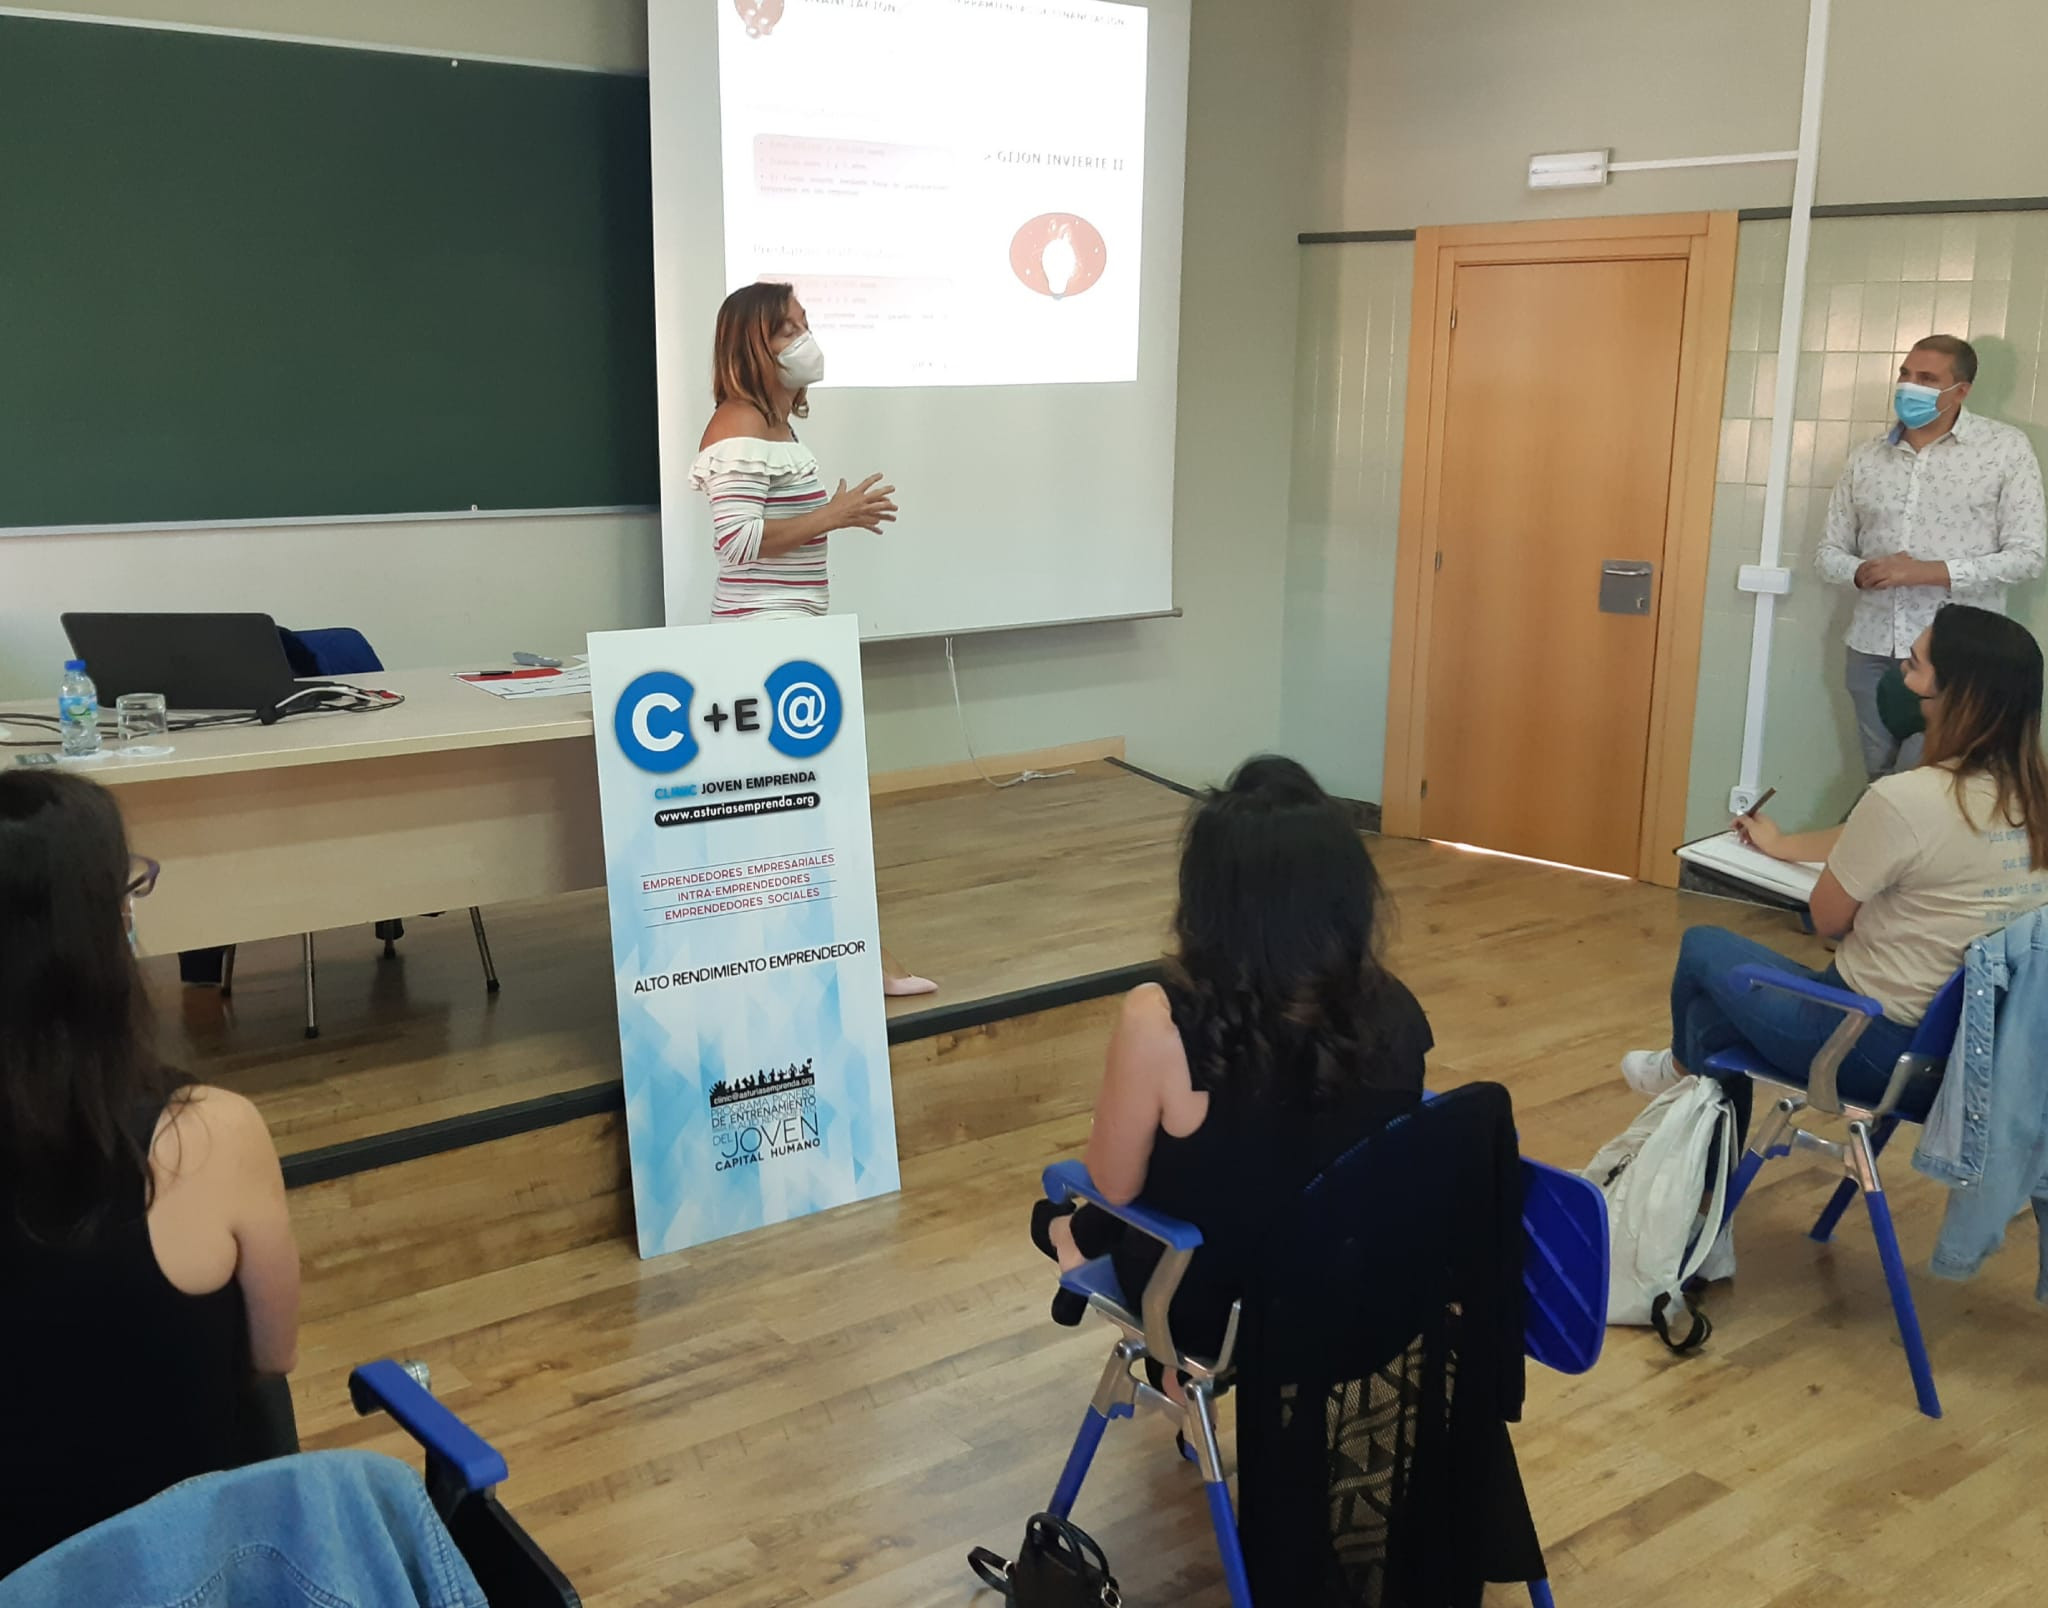 Asturias joven emprenda Emprender Gijón CME